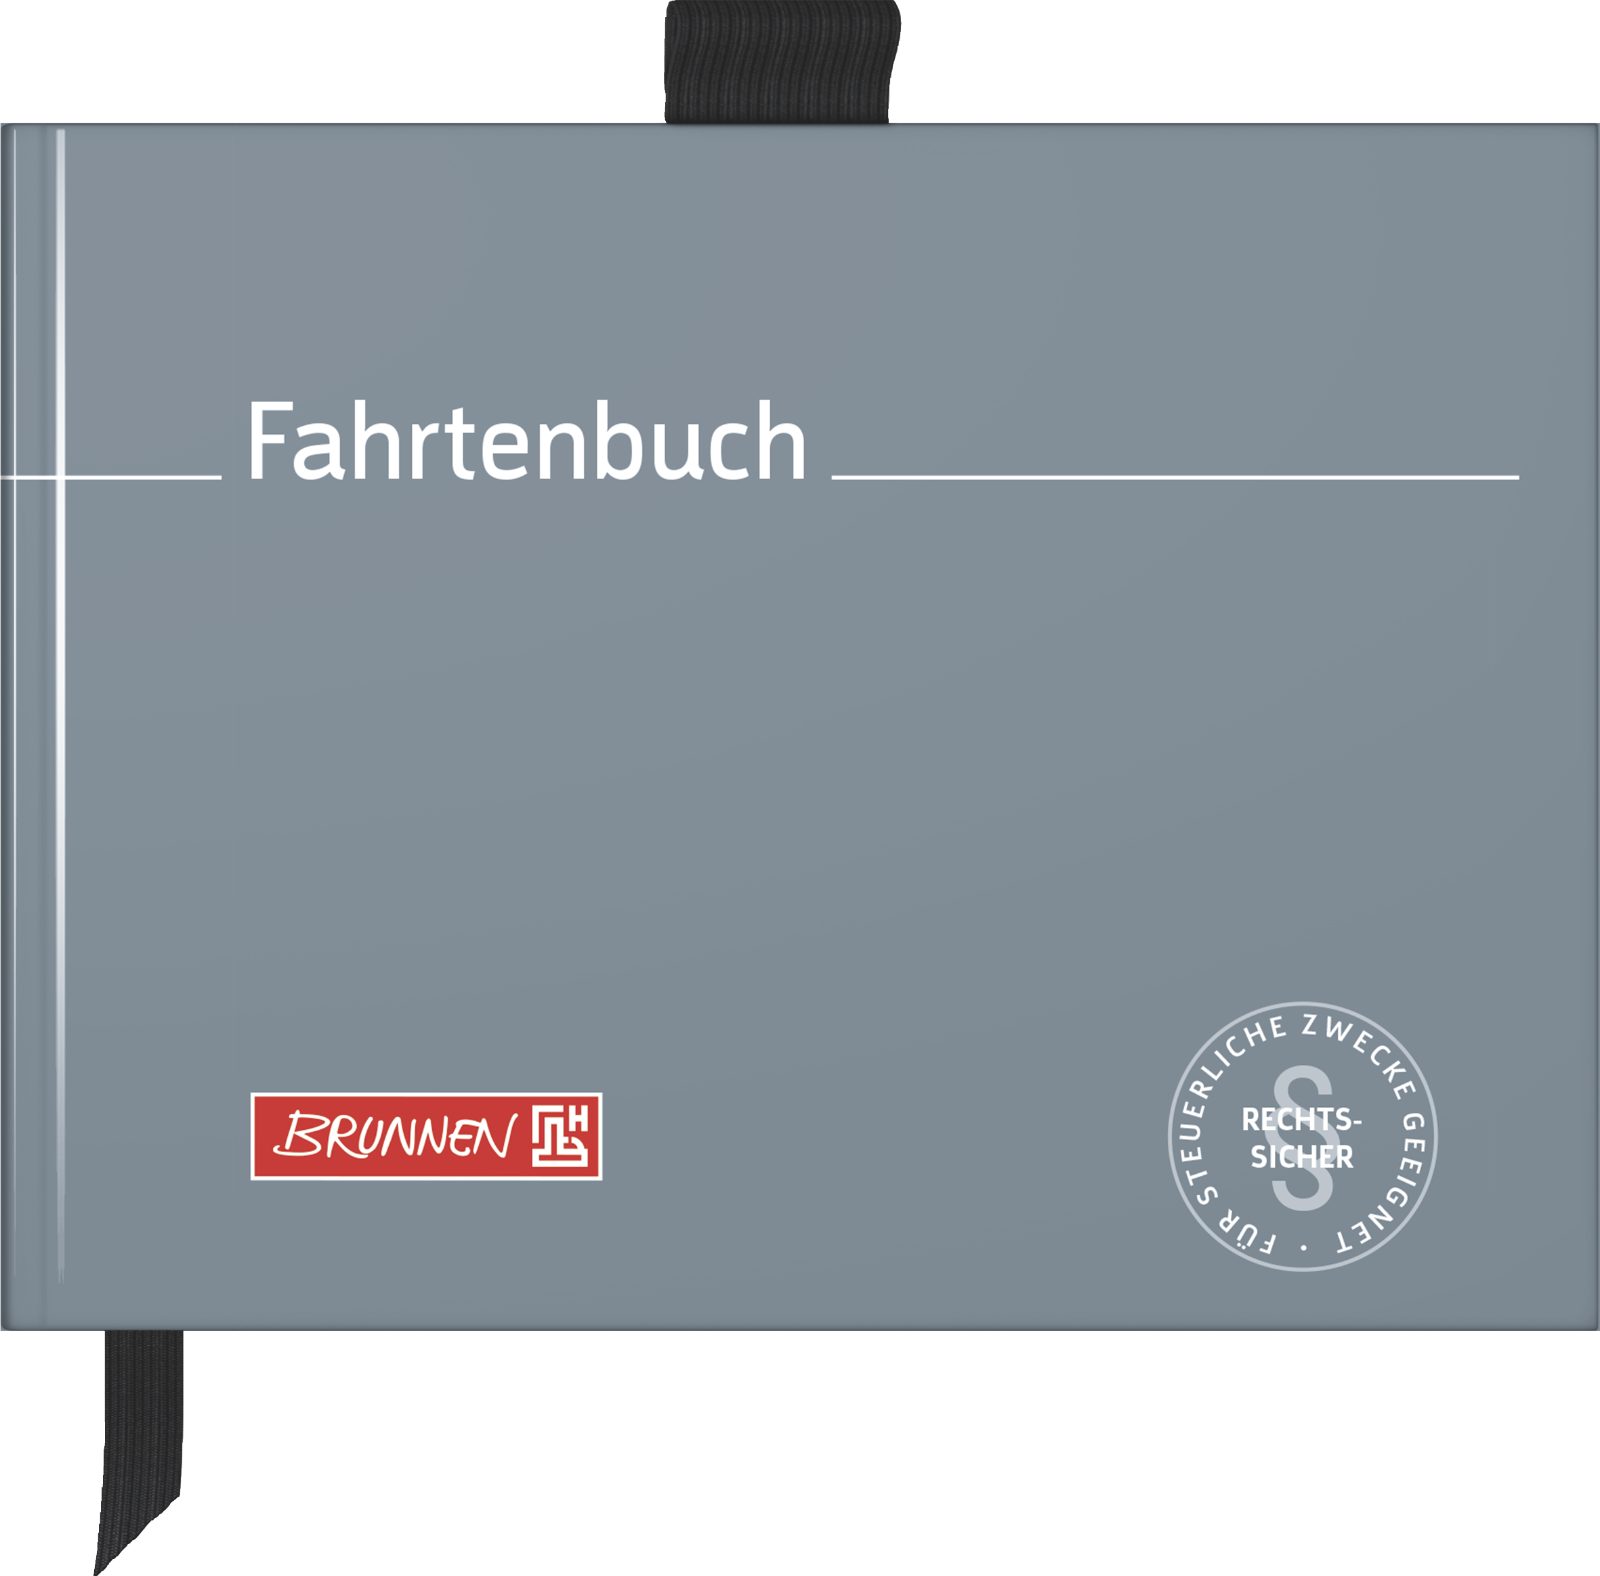 BRUNNEN Formularblock BRUNNEN Fahrtenbuch A6 quer 10-10143 40Blatt 1010143